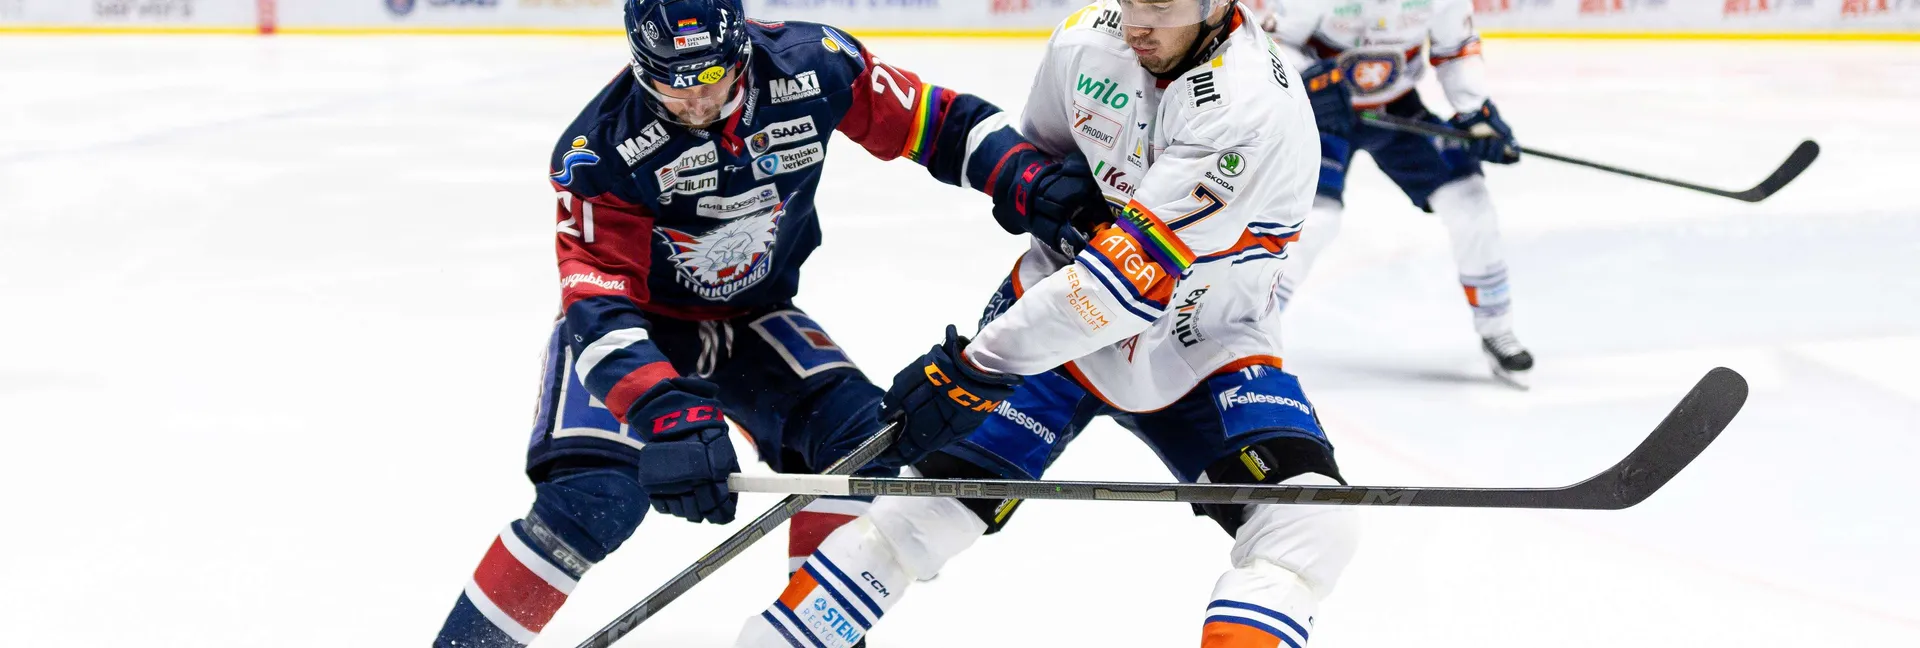 Ishockeymatch mellan Linköping och Växjö i SHL